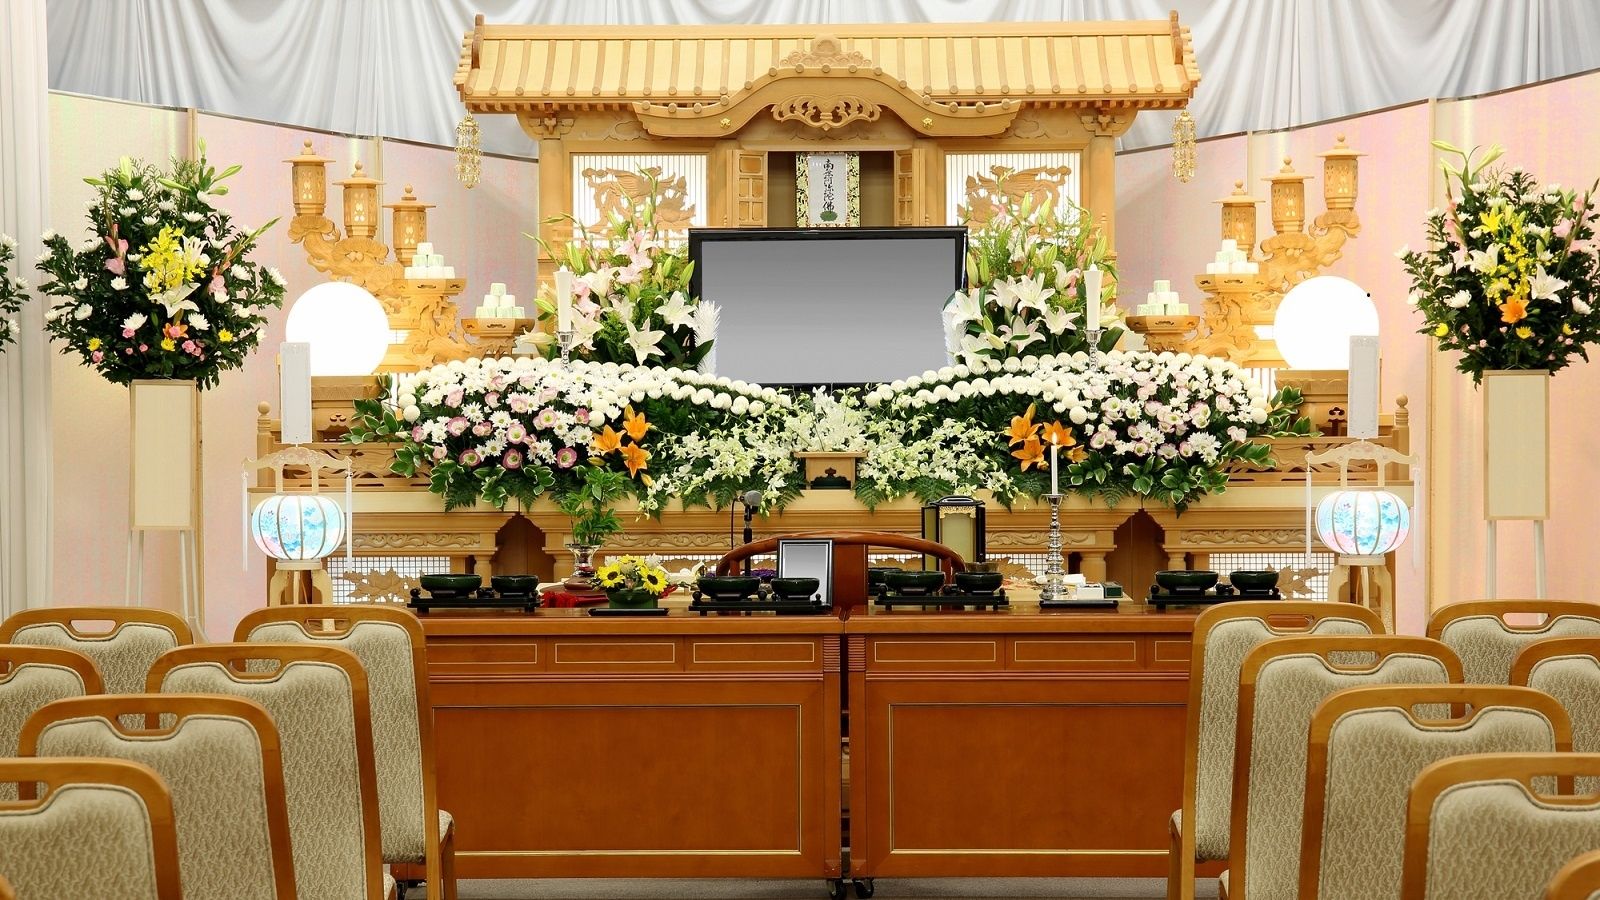 葬儀の平均費用195万円 が怪しすぎる理由 家庭 東洋経済オンライン 社会をよくする経済ニュース